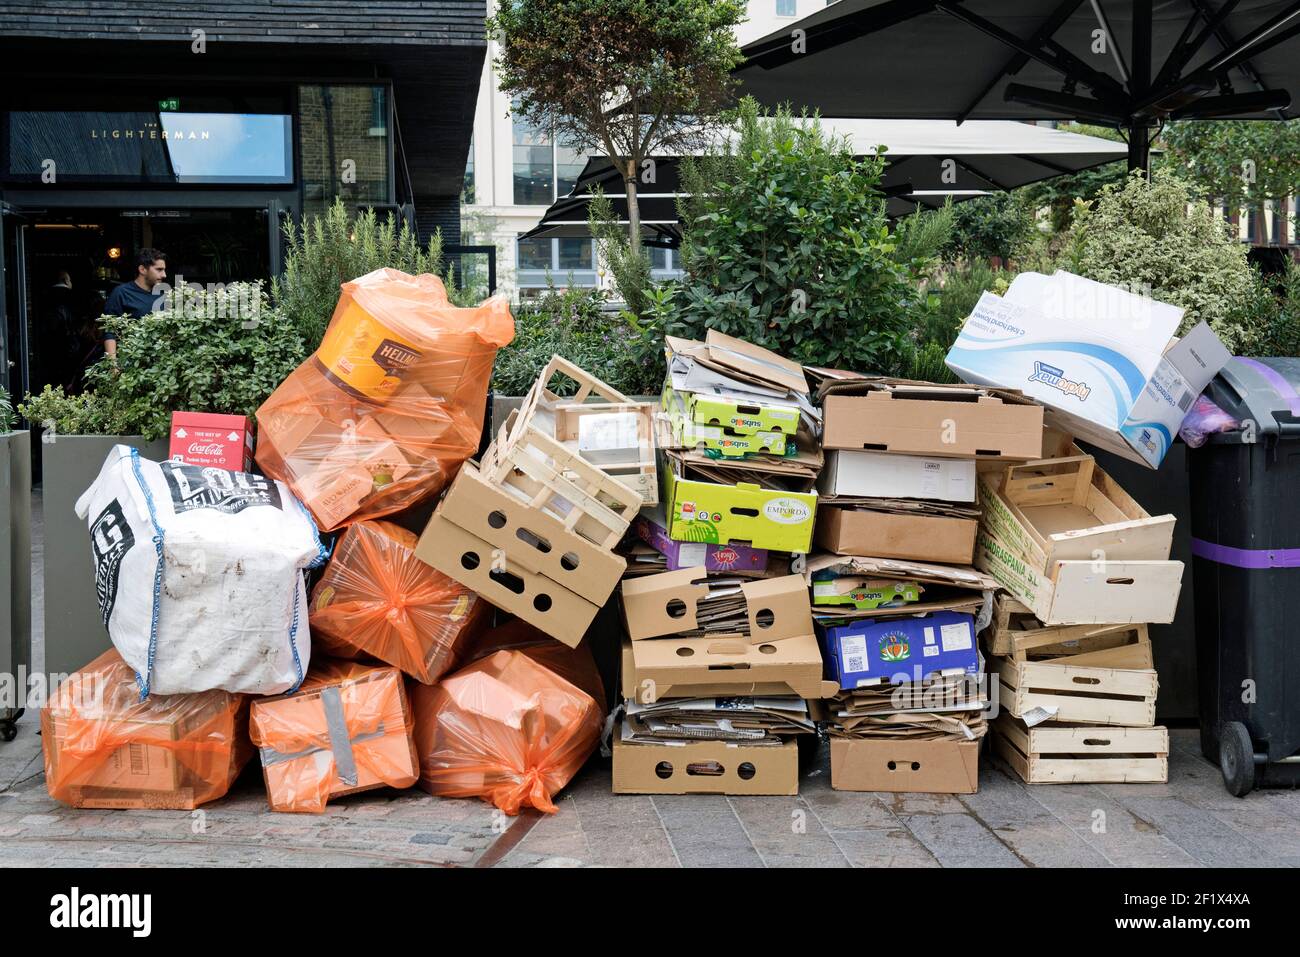 Müllhaufen, einschließlich Pappe und hölzernen Obstkisten, stapelten sich Vor dem Lighterman Restaurant Granary Square erwartet Sie die Sammlung Kings Kreuz Stockfoto